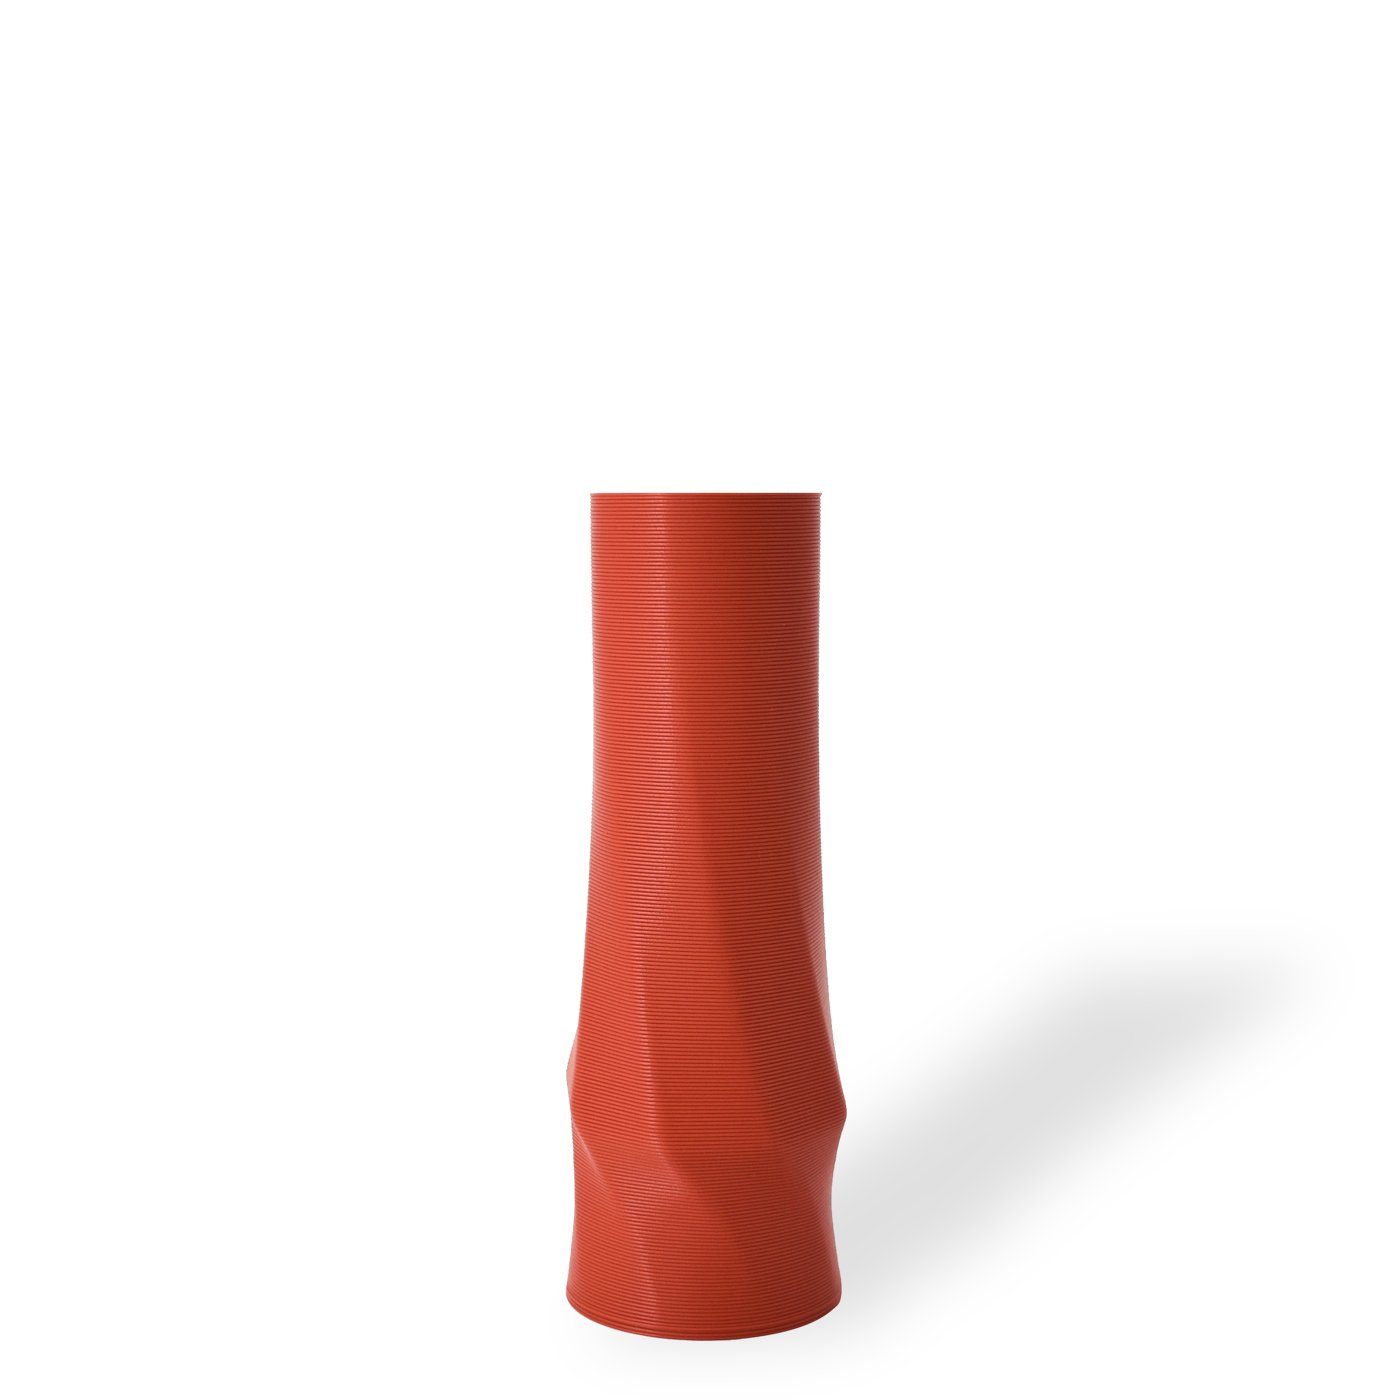 Shapes - Decorations Dekovase the vase - circle (basic), 3D Vasen, viele Farben, 100% 3D-Druck (Einzelmodell, 1 Vase), Wasserdicht; Leichte Struktur innerhalb des Materials (Rillung) Terracotta (rot)